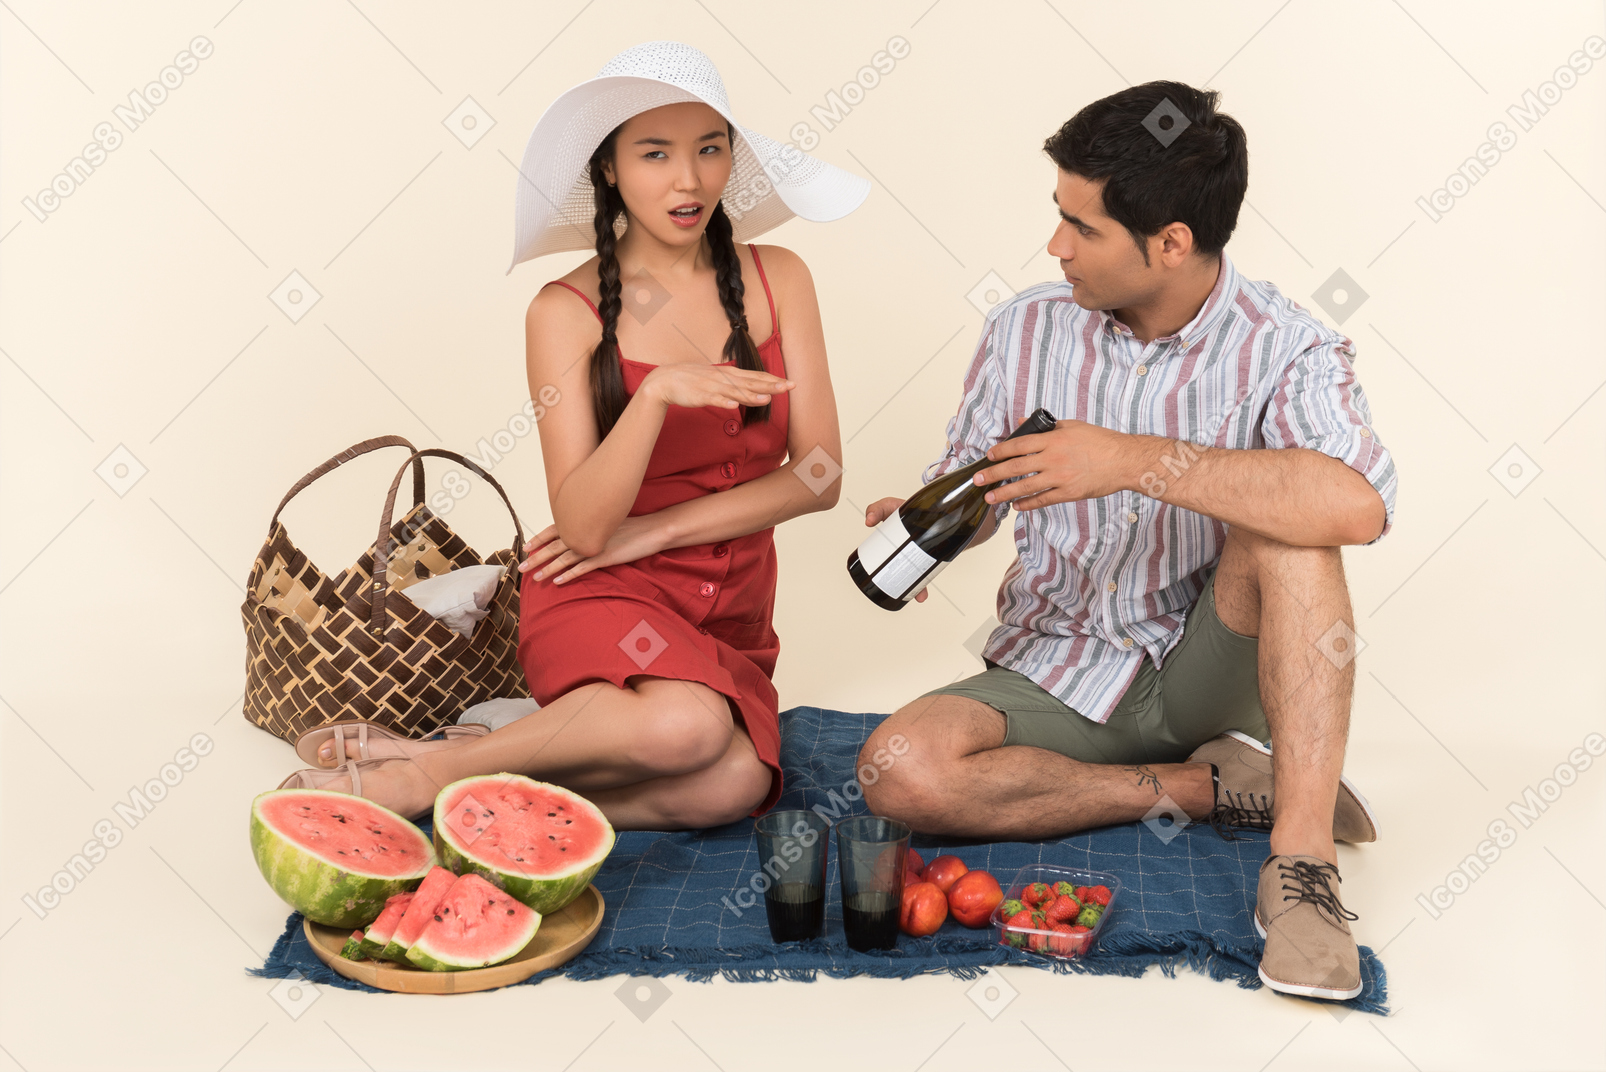 Ragazzo che mostra una bottiglia di vino in un pic-nic a una donna che sembra oltraggiata